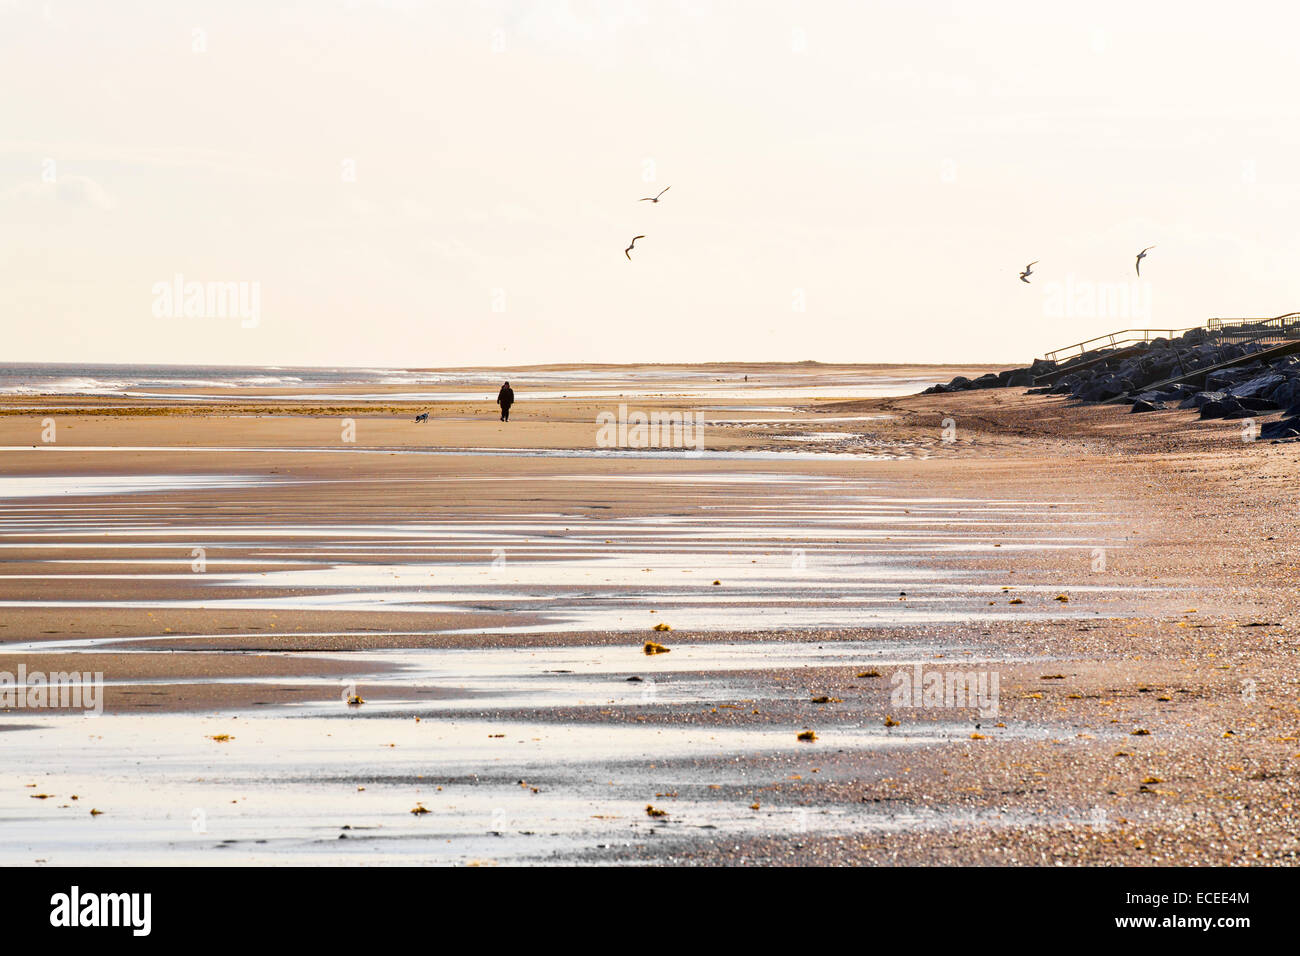 Une personne qui marche un chien sur la plage de Skegness, UK Banque D'Images